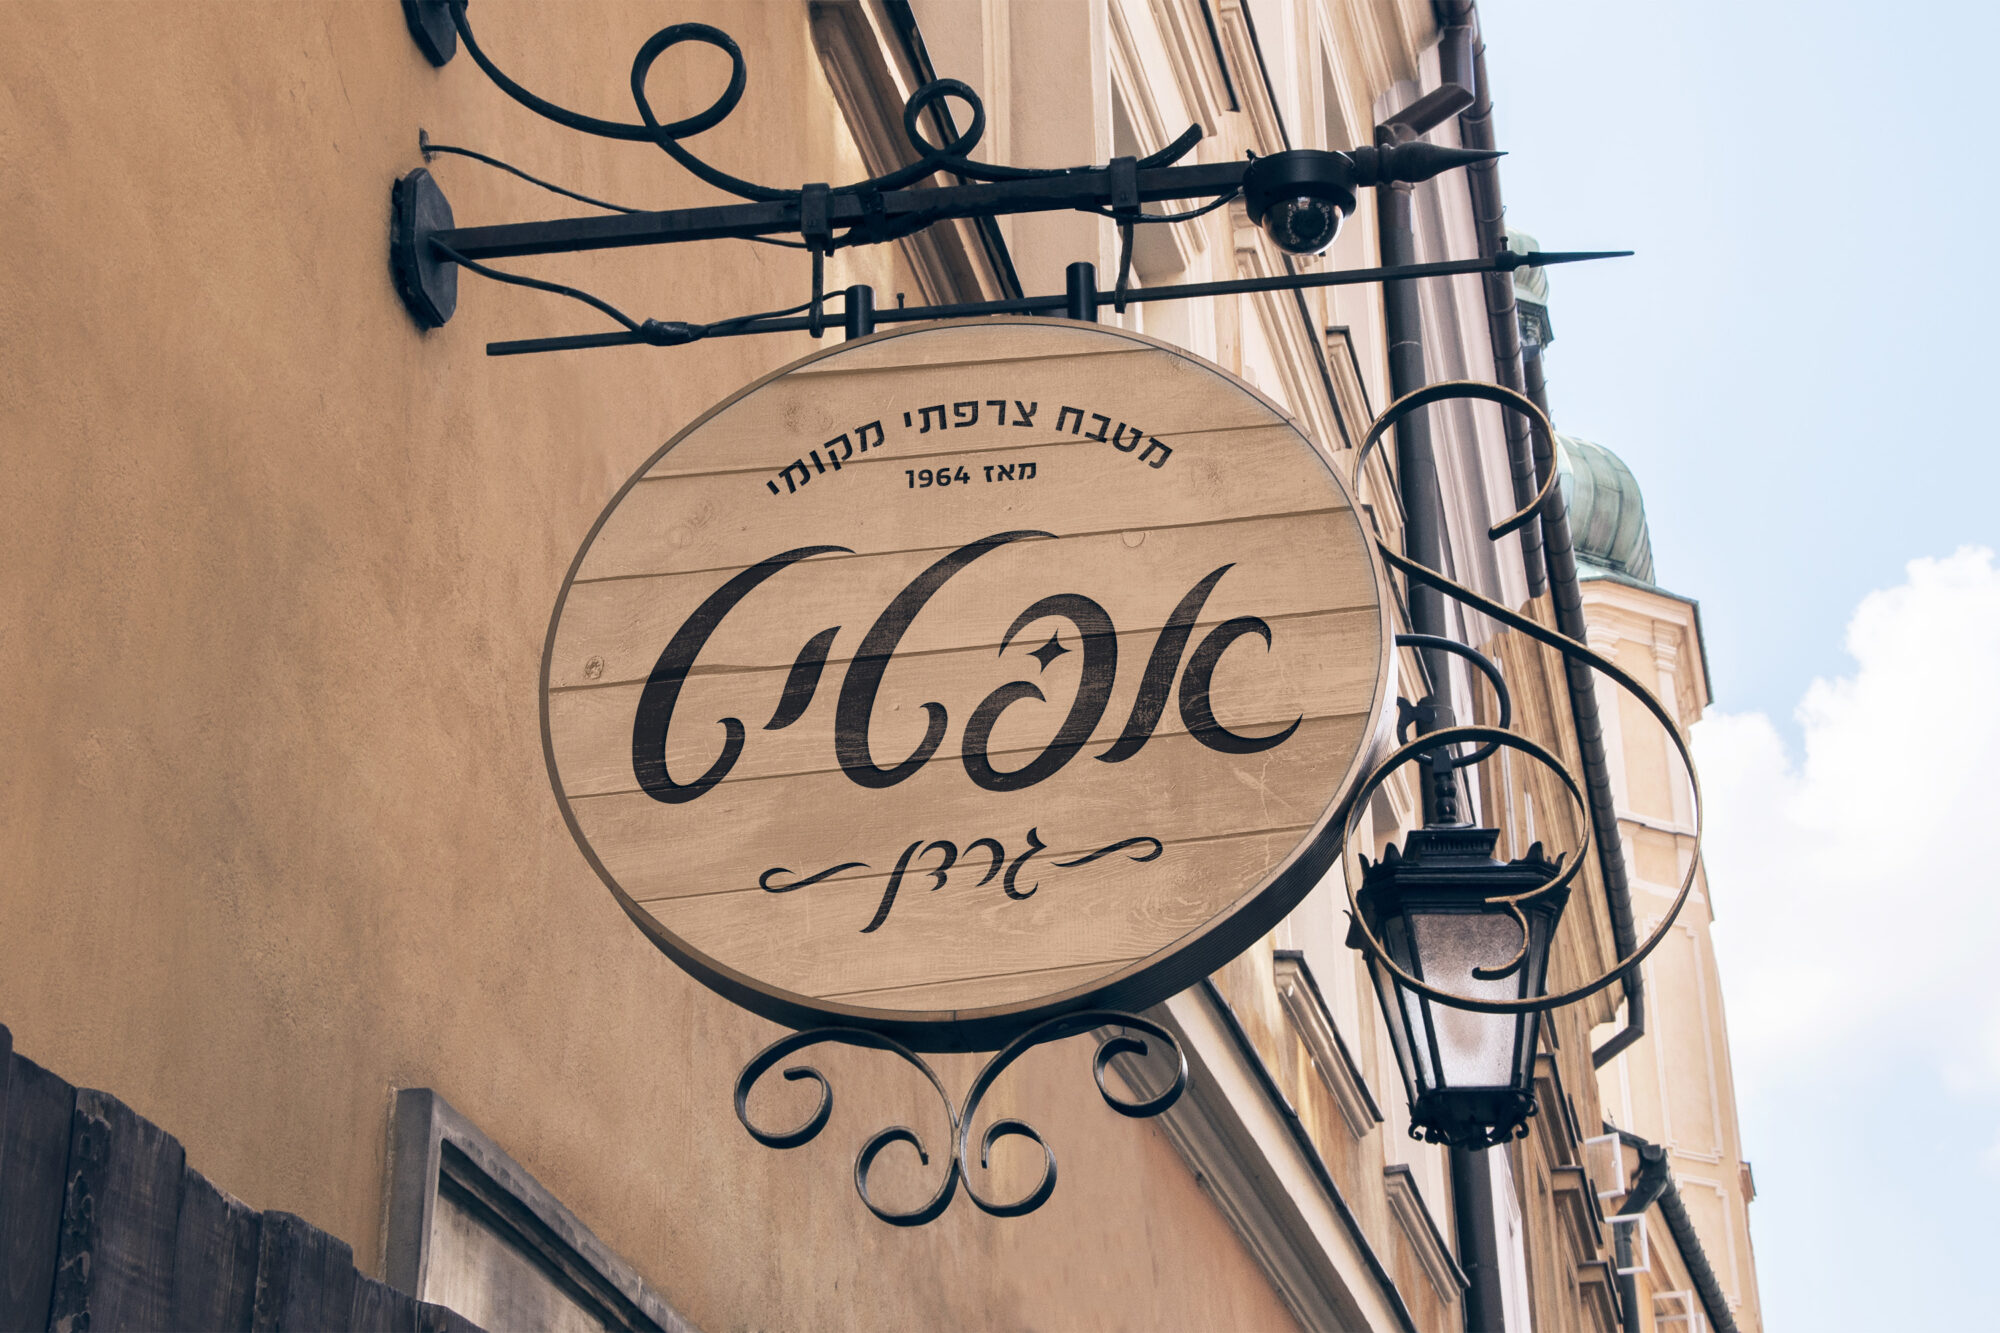 לוגו מפואר למסעדה - אפטיט - מטבח צרפתי מקומי, עיצוב עם פונט לואיז